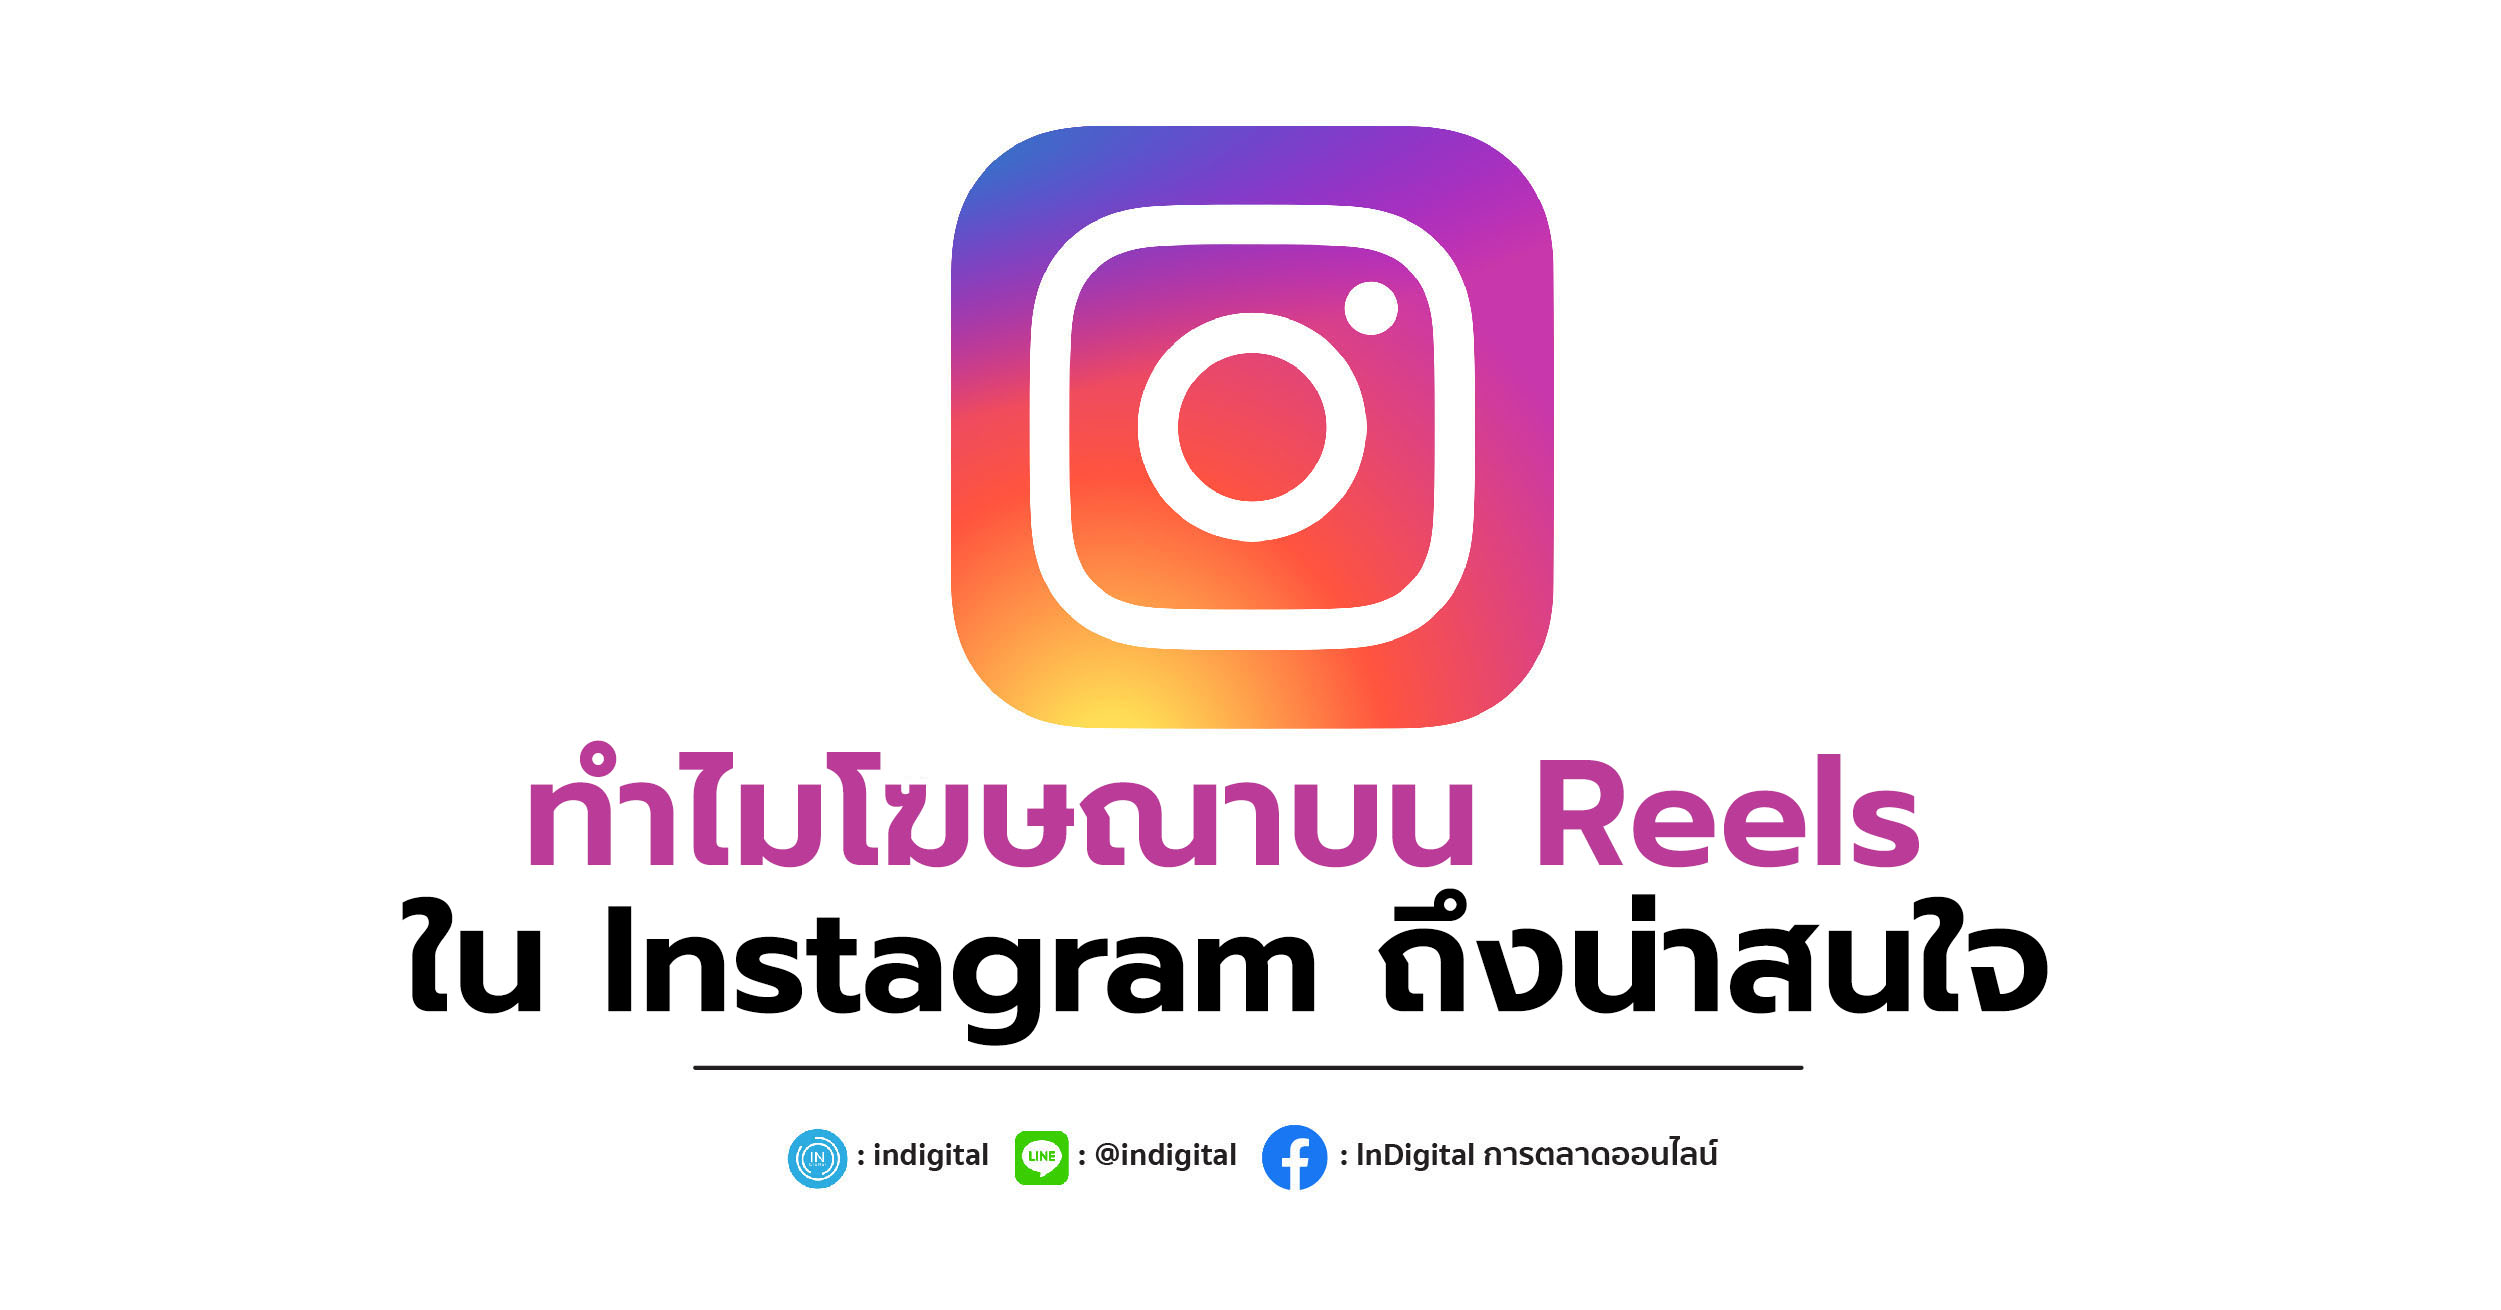 ทำไมโฆษณาบน Reels ใน Instagram ถึงน่าสนใจ